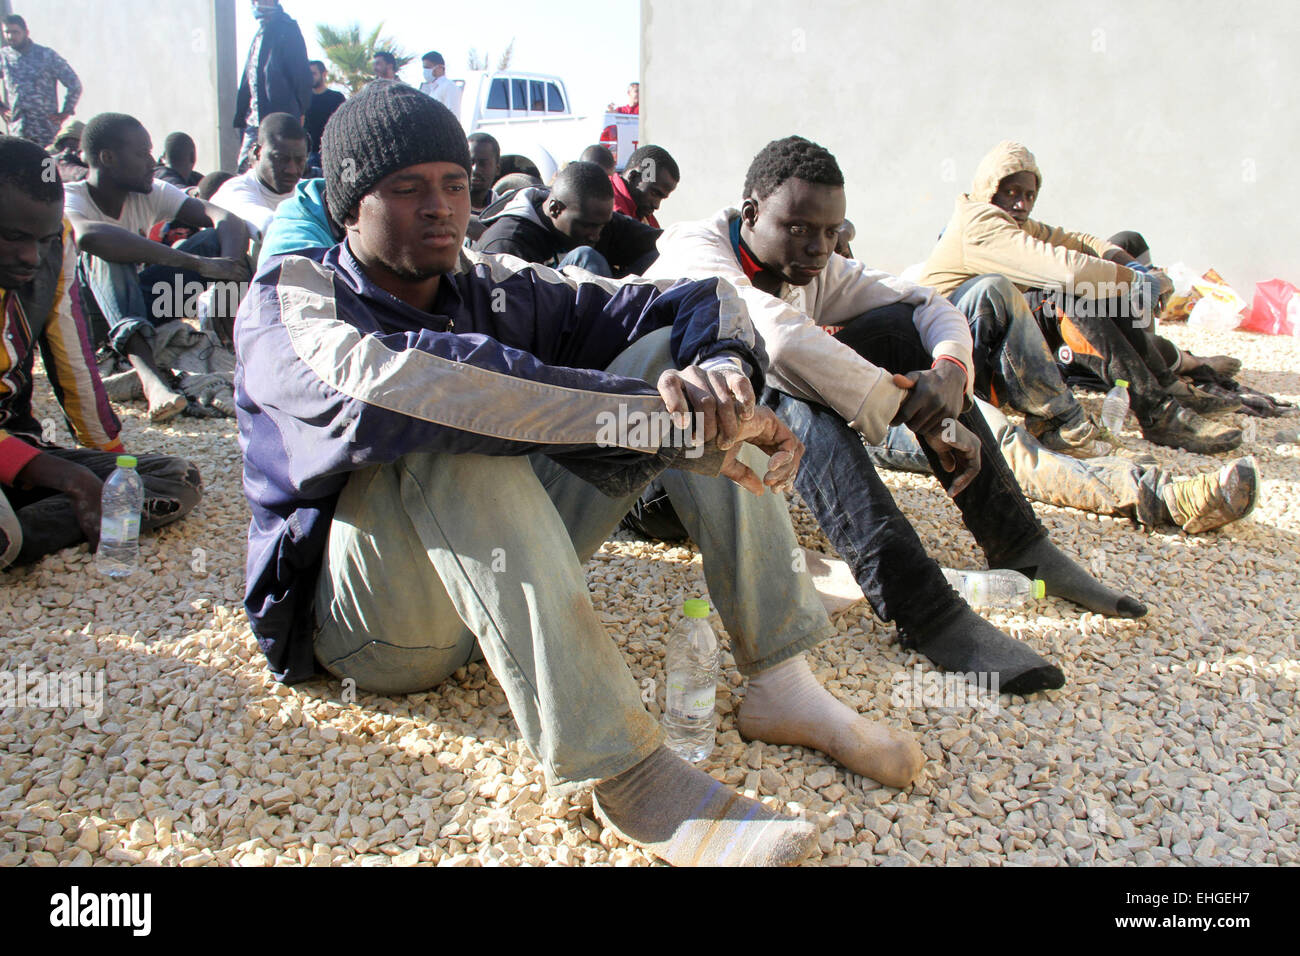 (150313)--Tripolis, März 13, 2015(Xinhua)--illegale Einwanderer sitzen in einem Hof, bewacht von der libyschen Polizei in Tripolis, Libyen, am 13. März 2015. Libyen ist seit langem ein Durchgangsort für Migranten, die darauf abzielen, Malta, Italien und anderswo in Europa zu erreichen. (Xinhua/Hamza-Türkei) Stockfoto